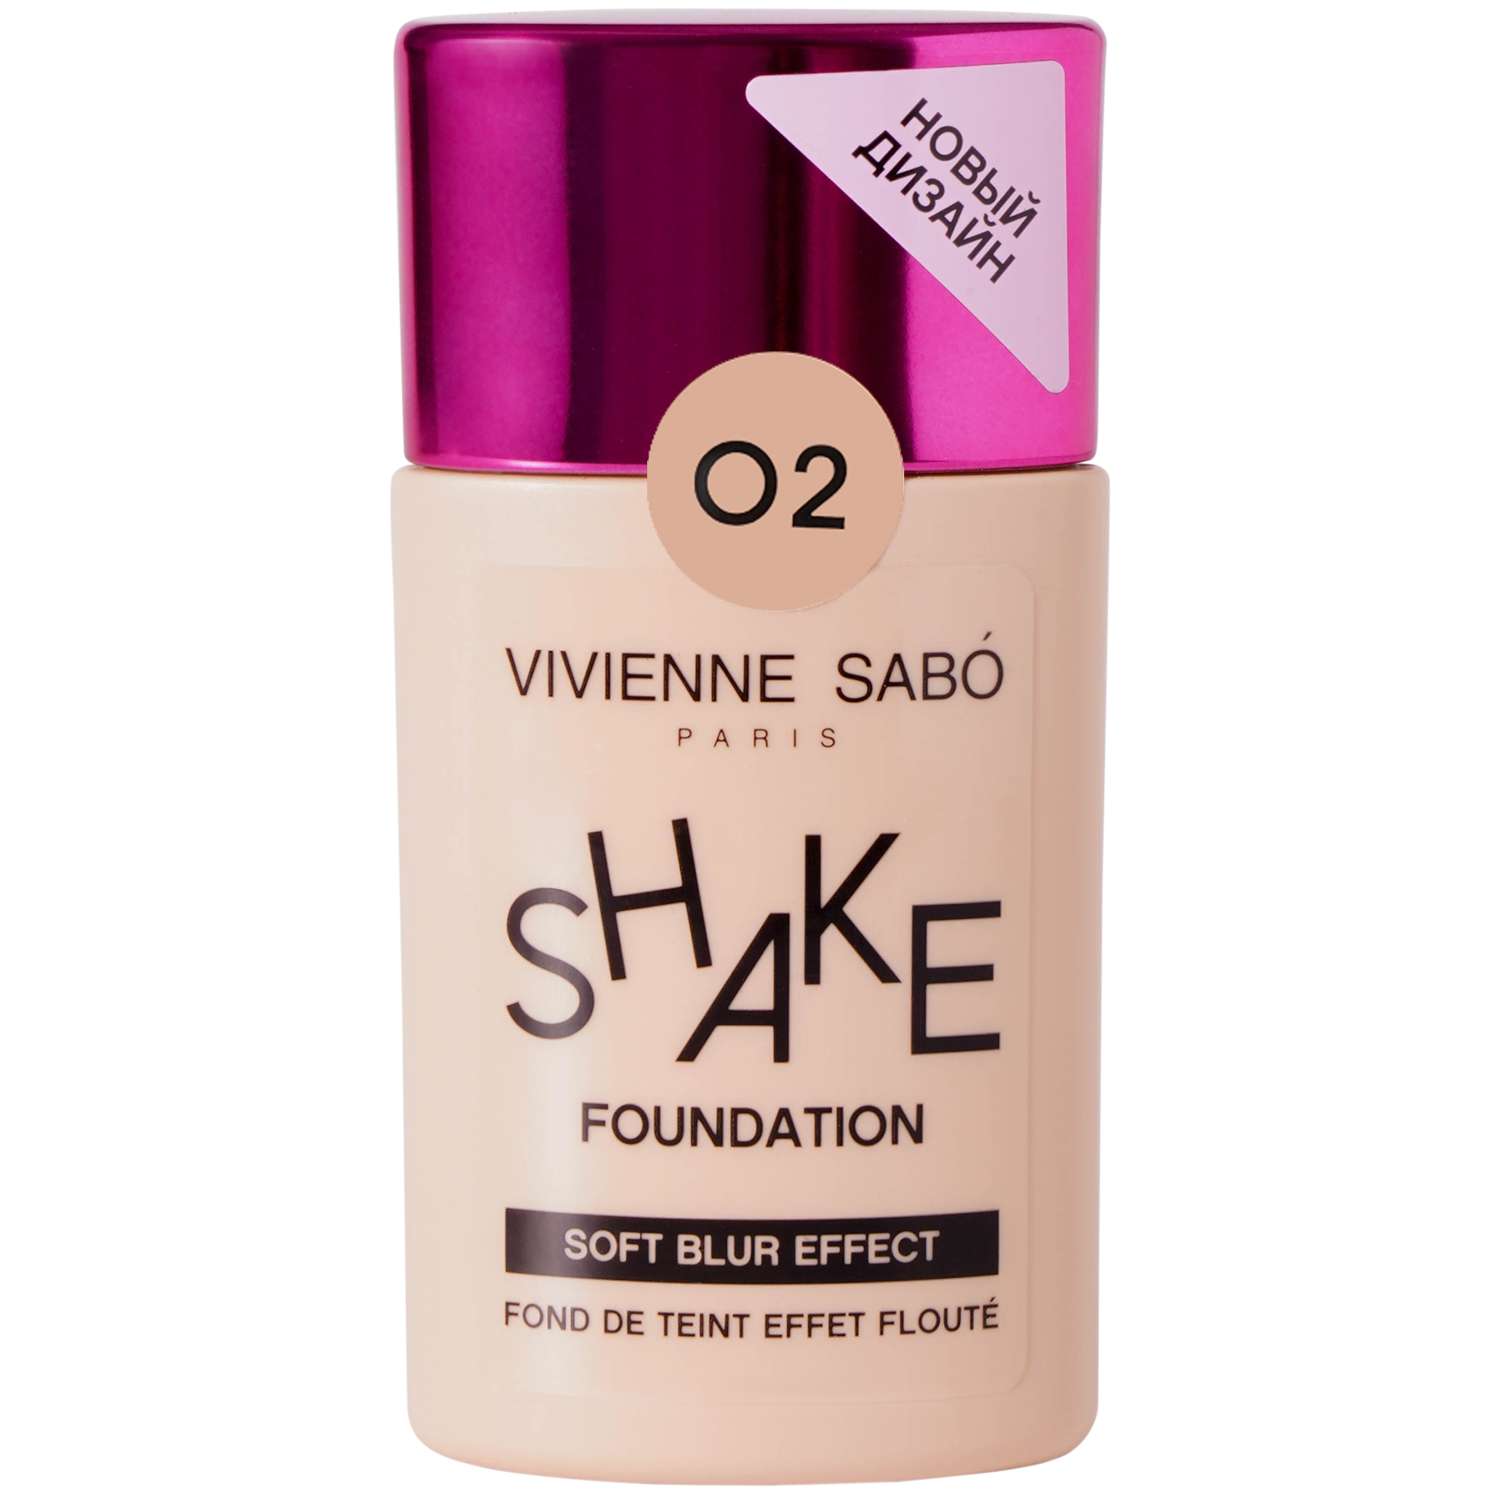 Тональный крем Vivienne Sabo с натуральным блюр эффектом Shakefoundation тон 02 - фото 1